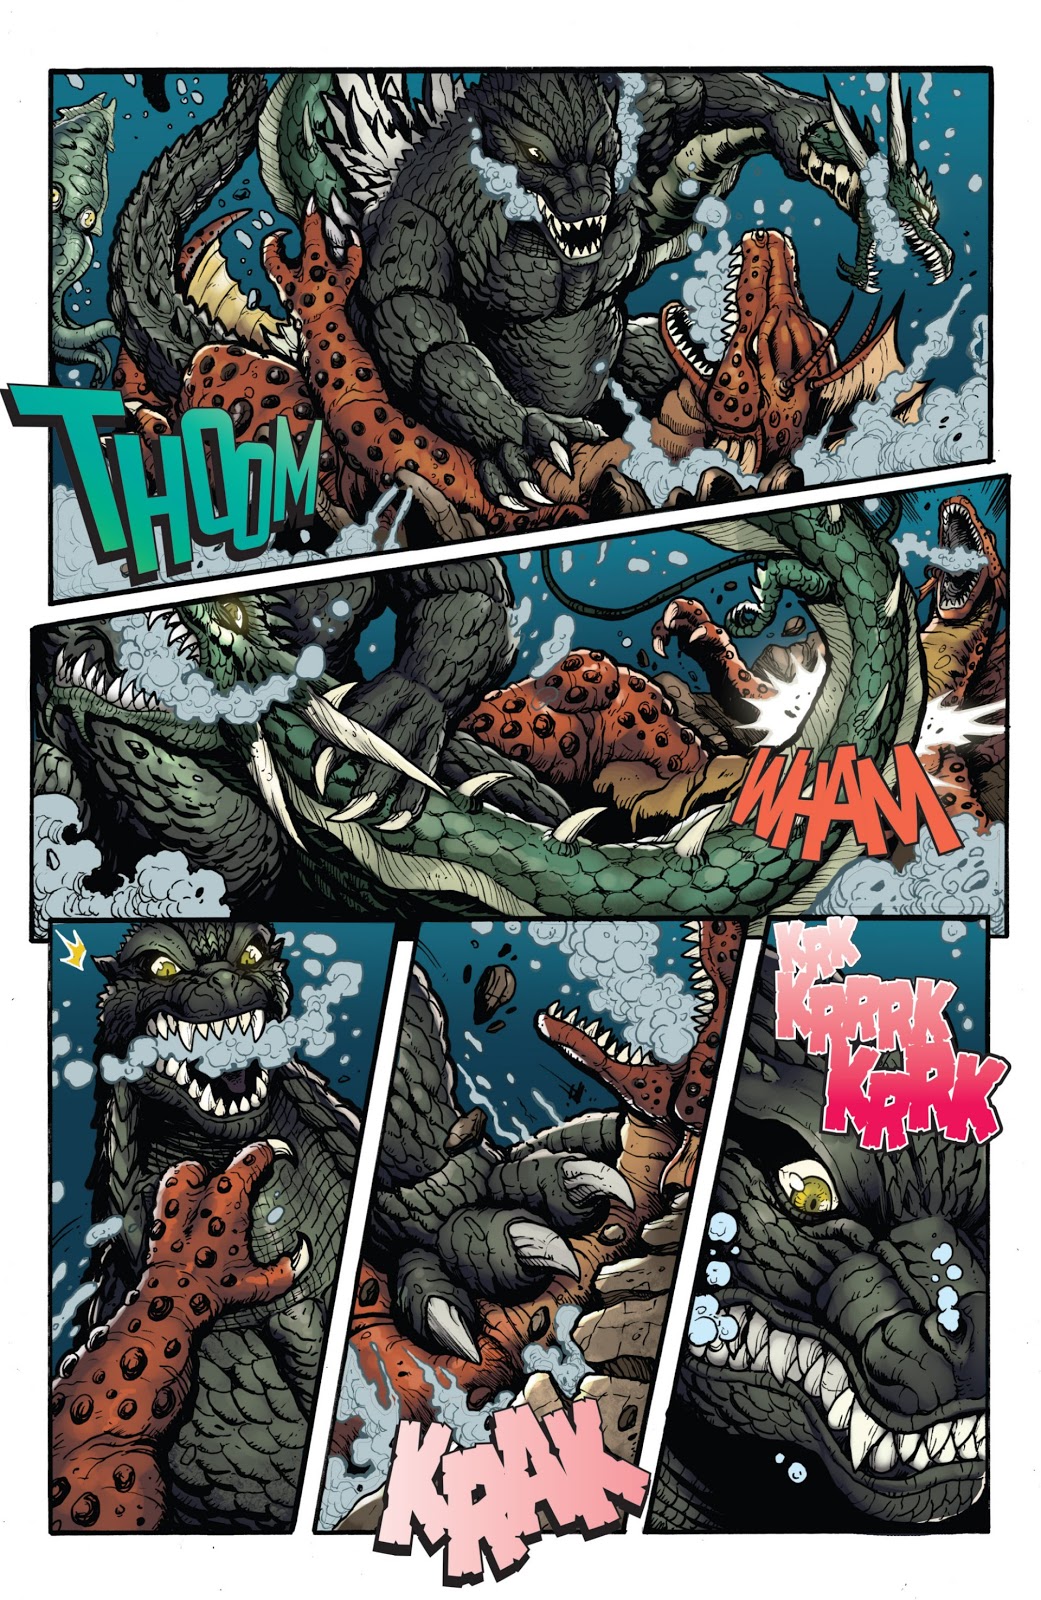 Godzilla (Marvel Comics), VS Battles Wiki